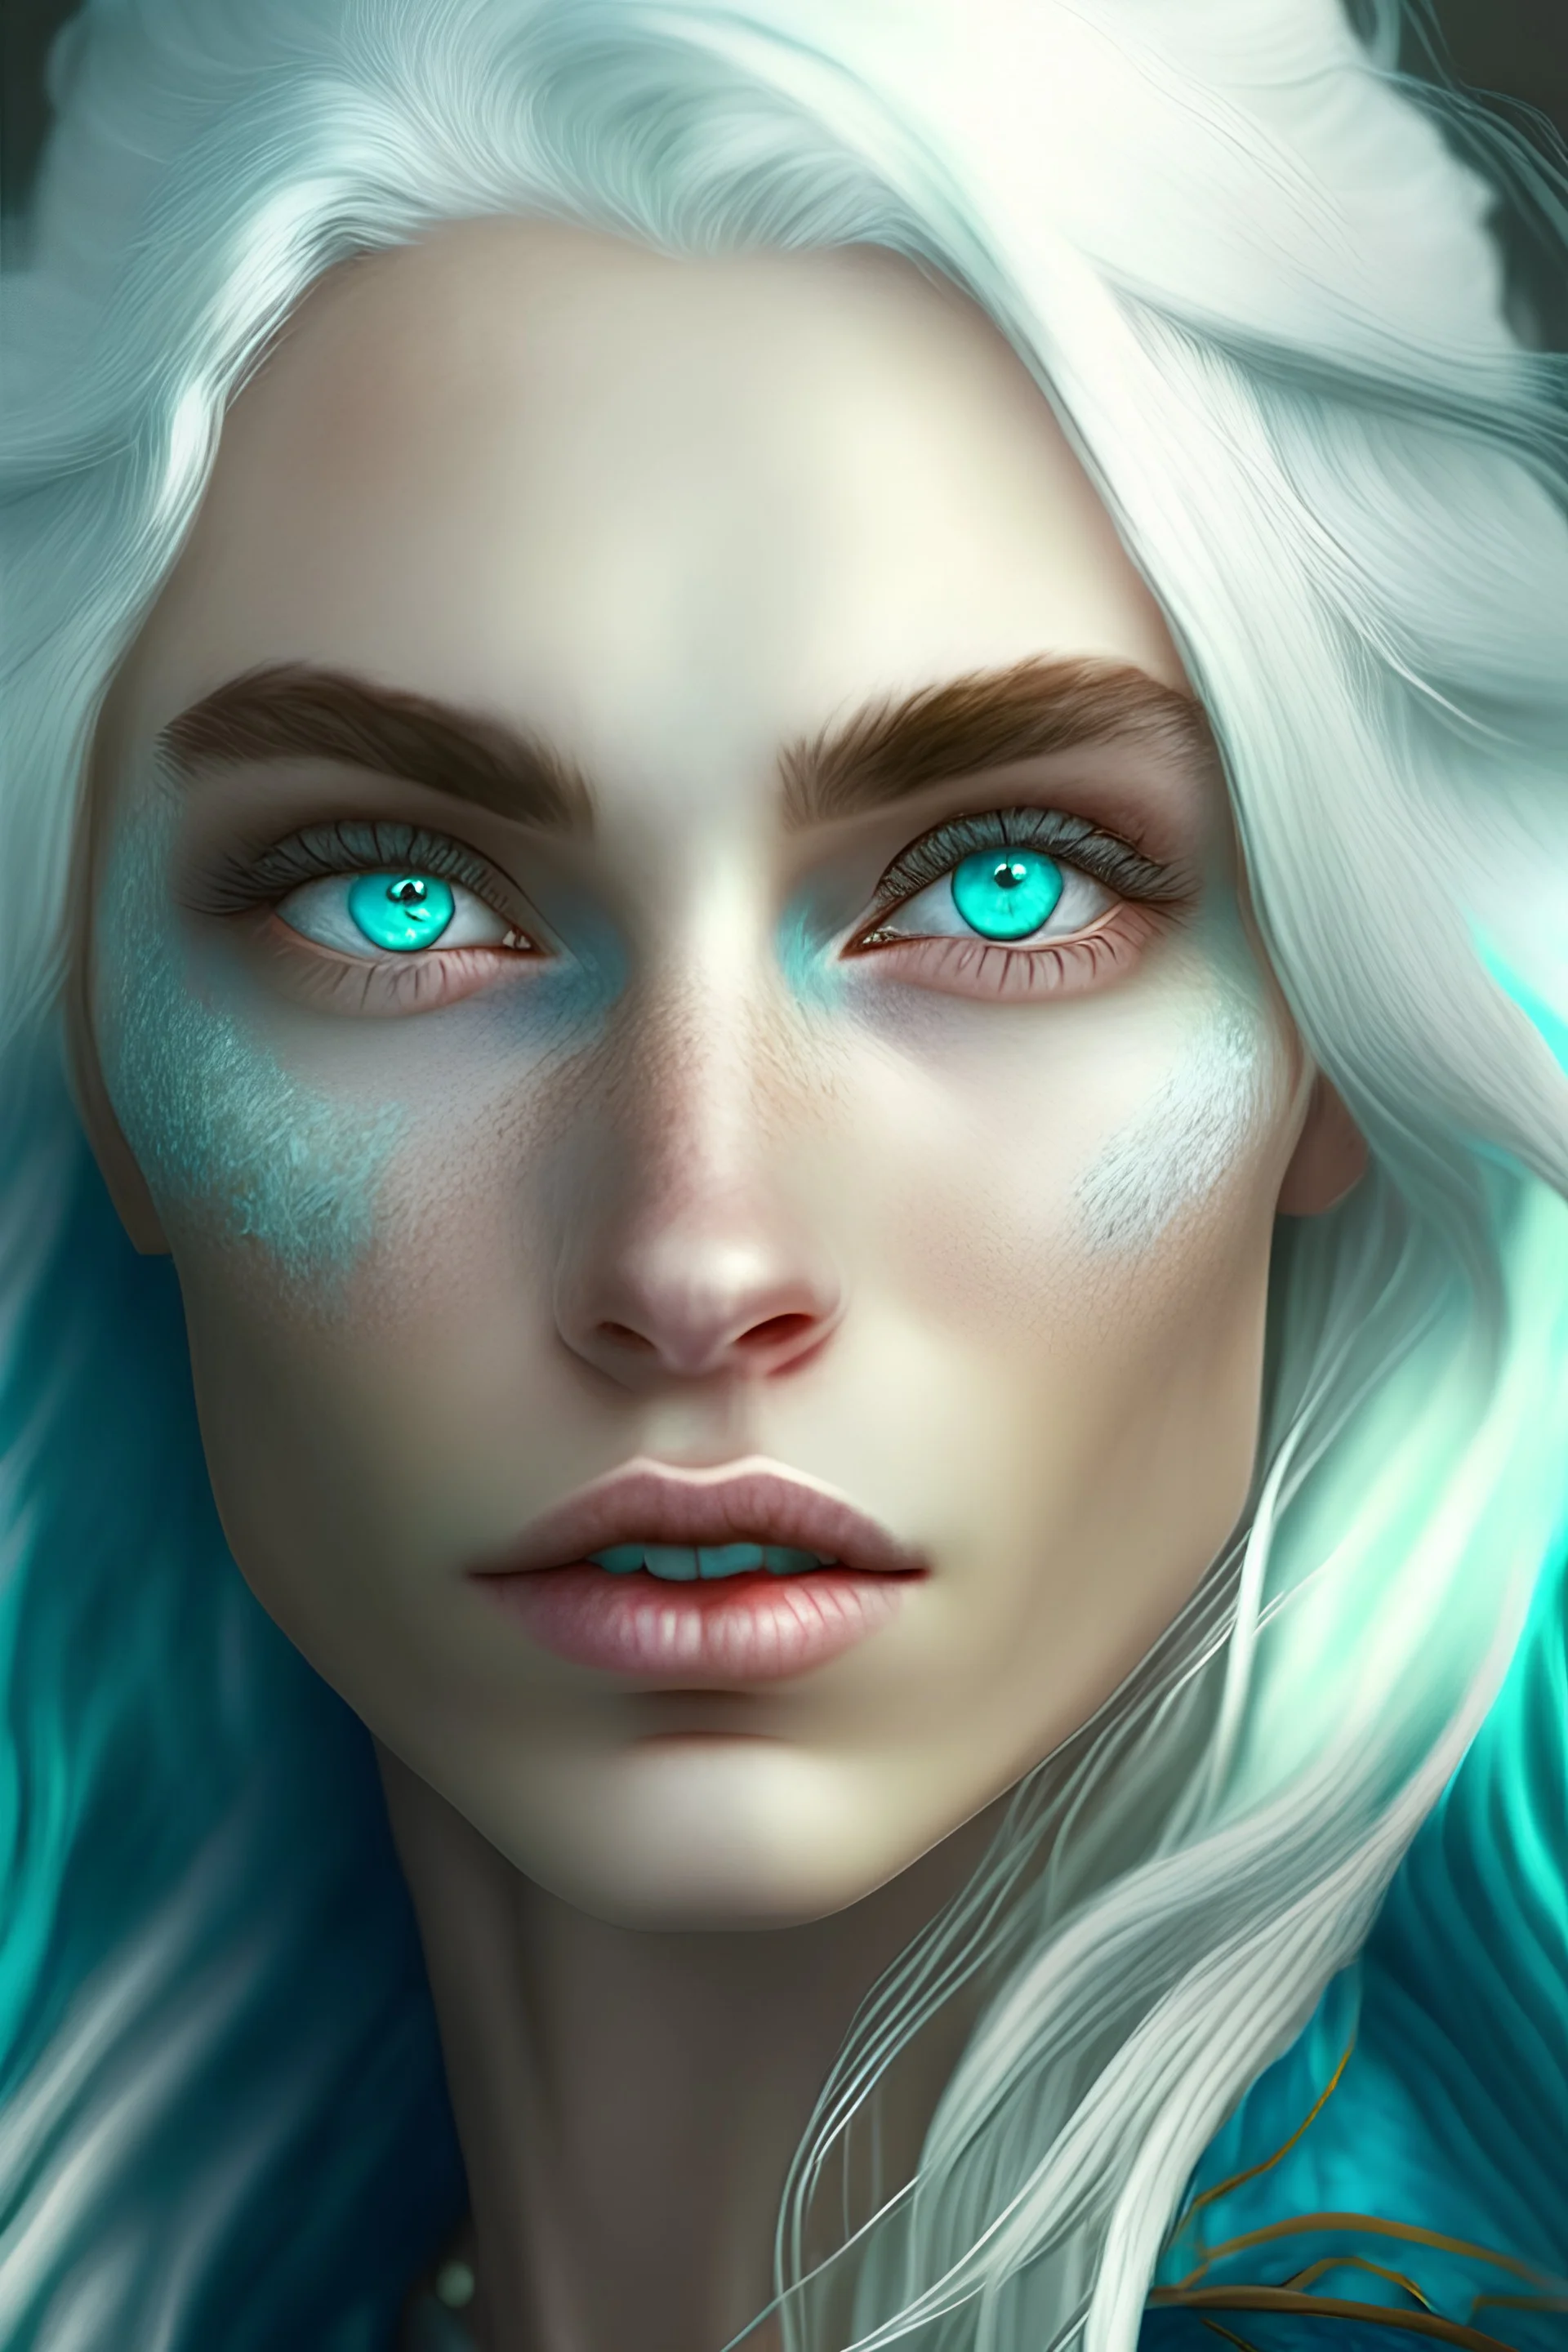 إمرأة جميلة جدا ببشرة زرقاء وعينان خضراوتان وشعر أبيض ناعم وجميل